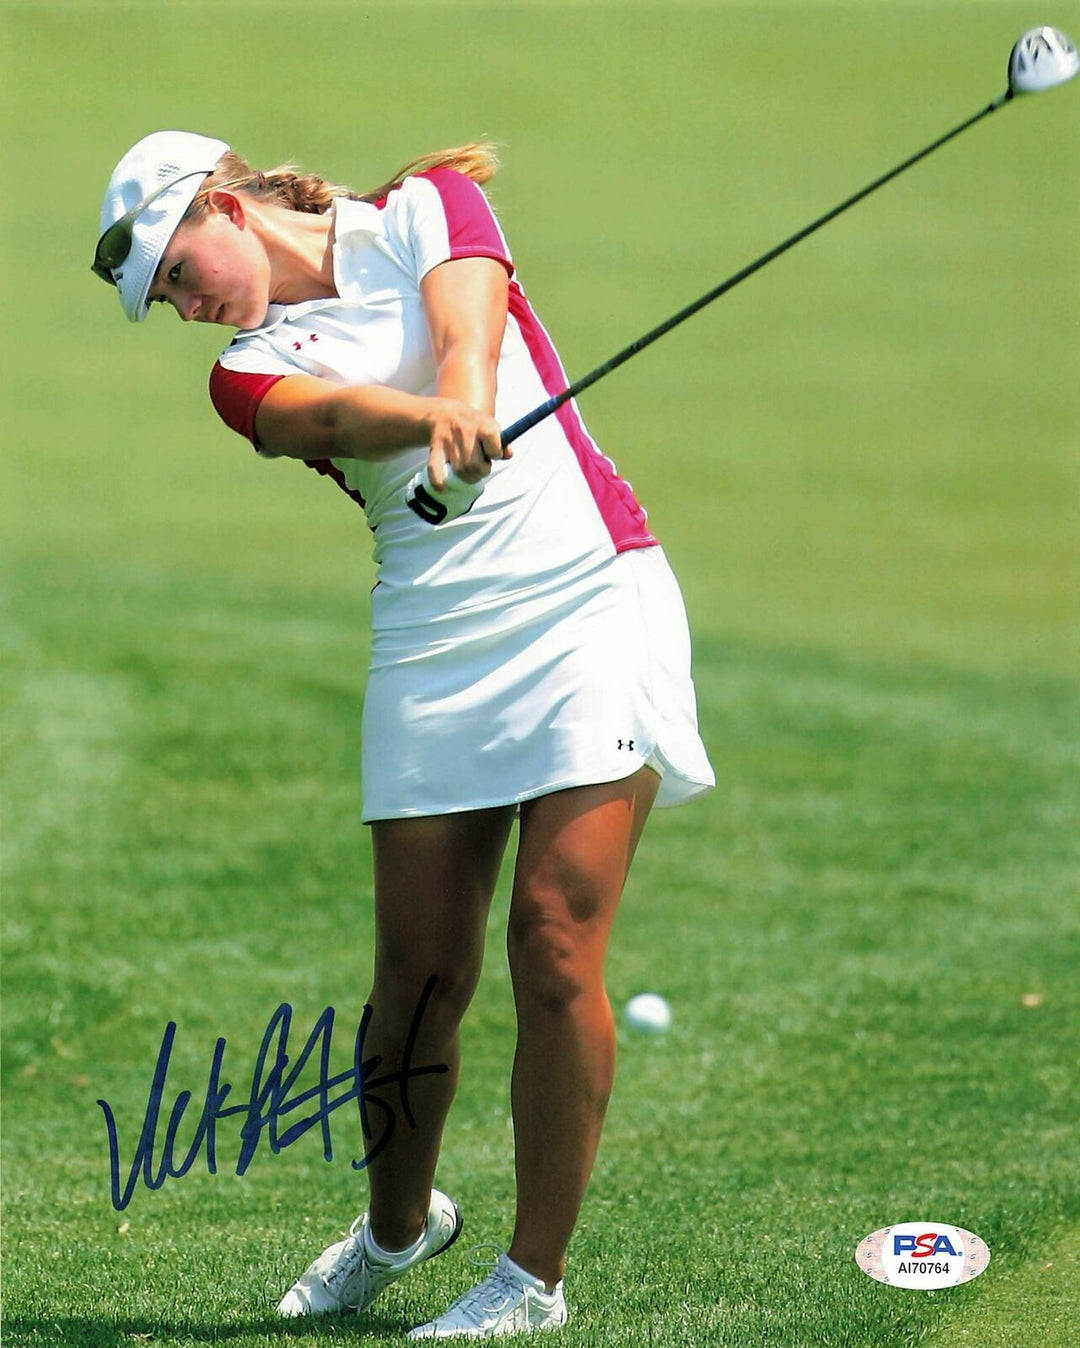 Vicky Hurst signed 8x10 photo PSA/DNA Autographed Golf Image 1